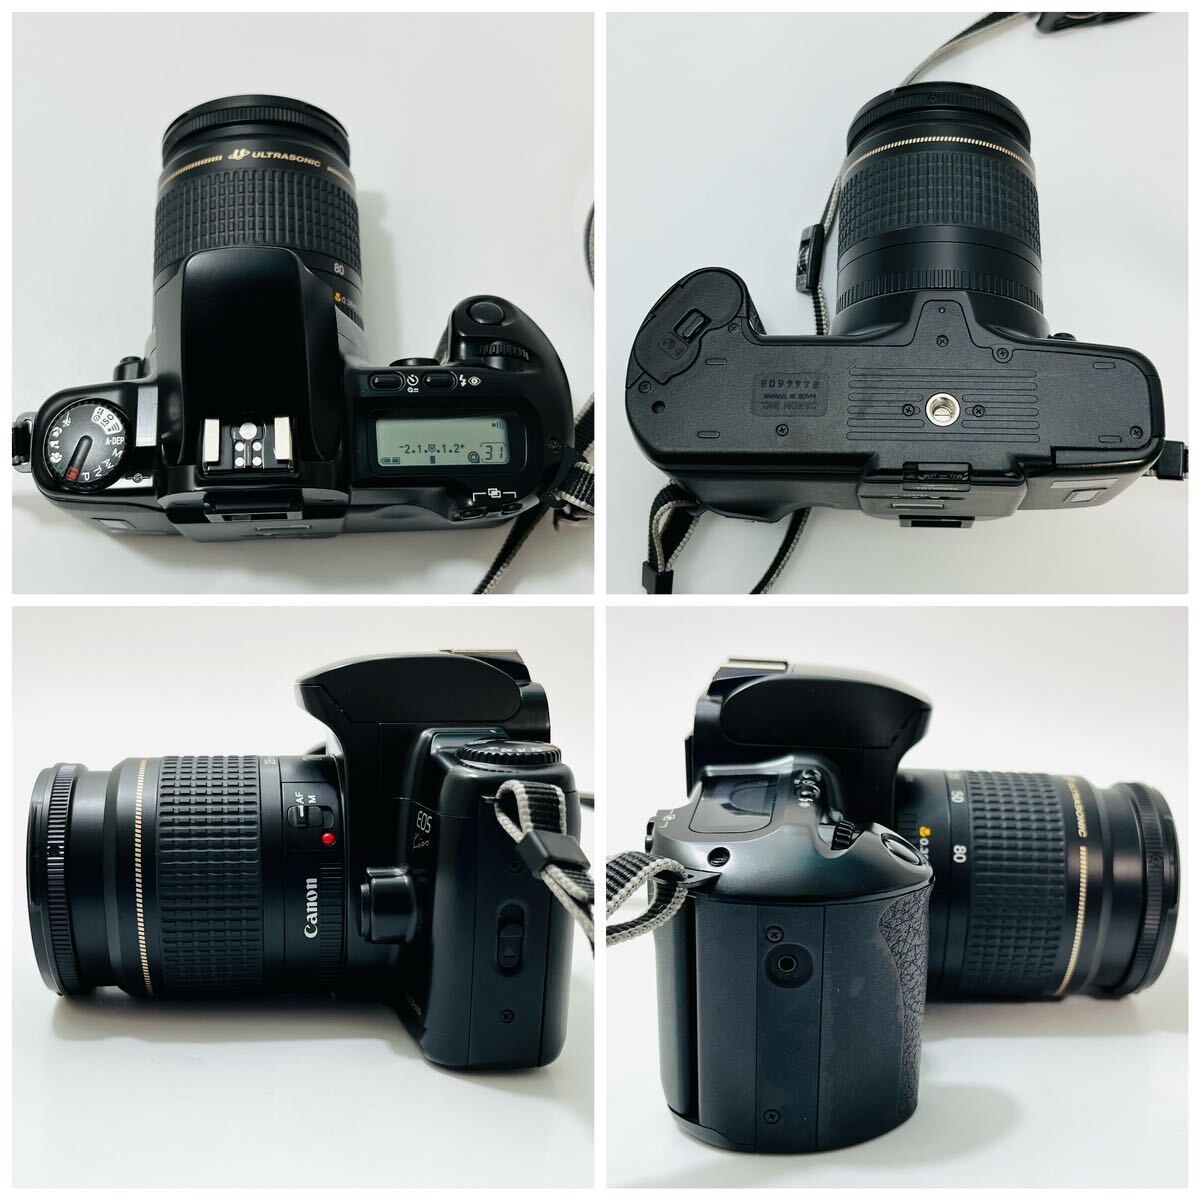 Canonフィルムカメラ EOS Kiss イオス キス キャノン レンズ ULTRASONIC 0.38m/1.3ft AF 28-80mmの画像3